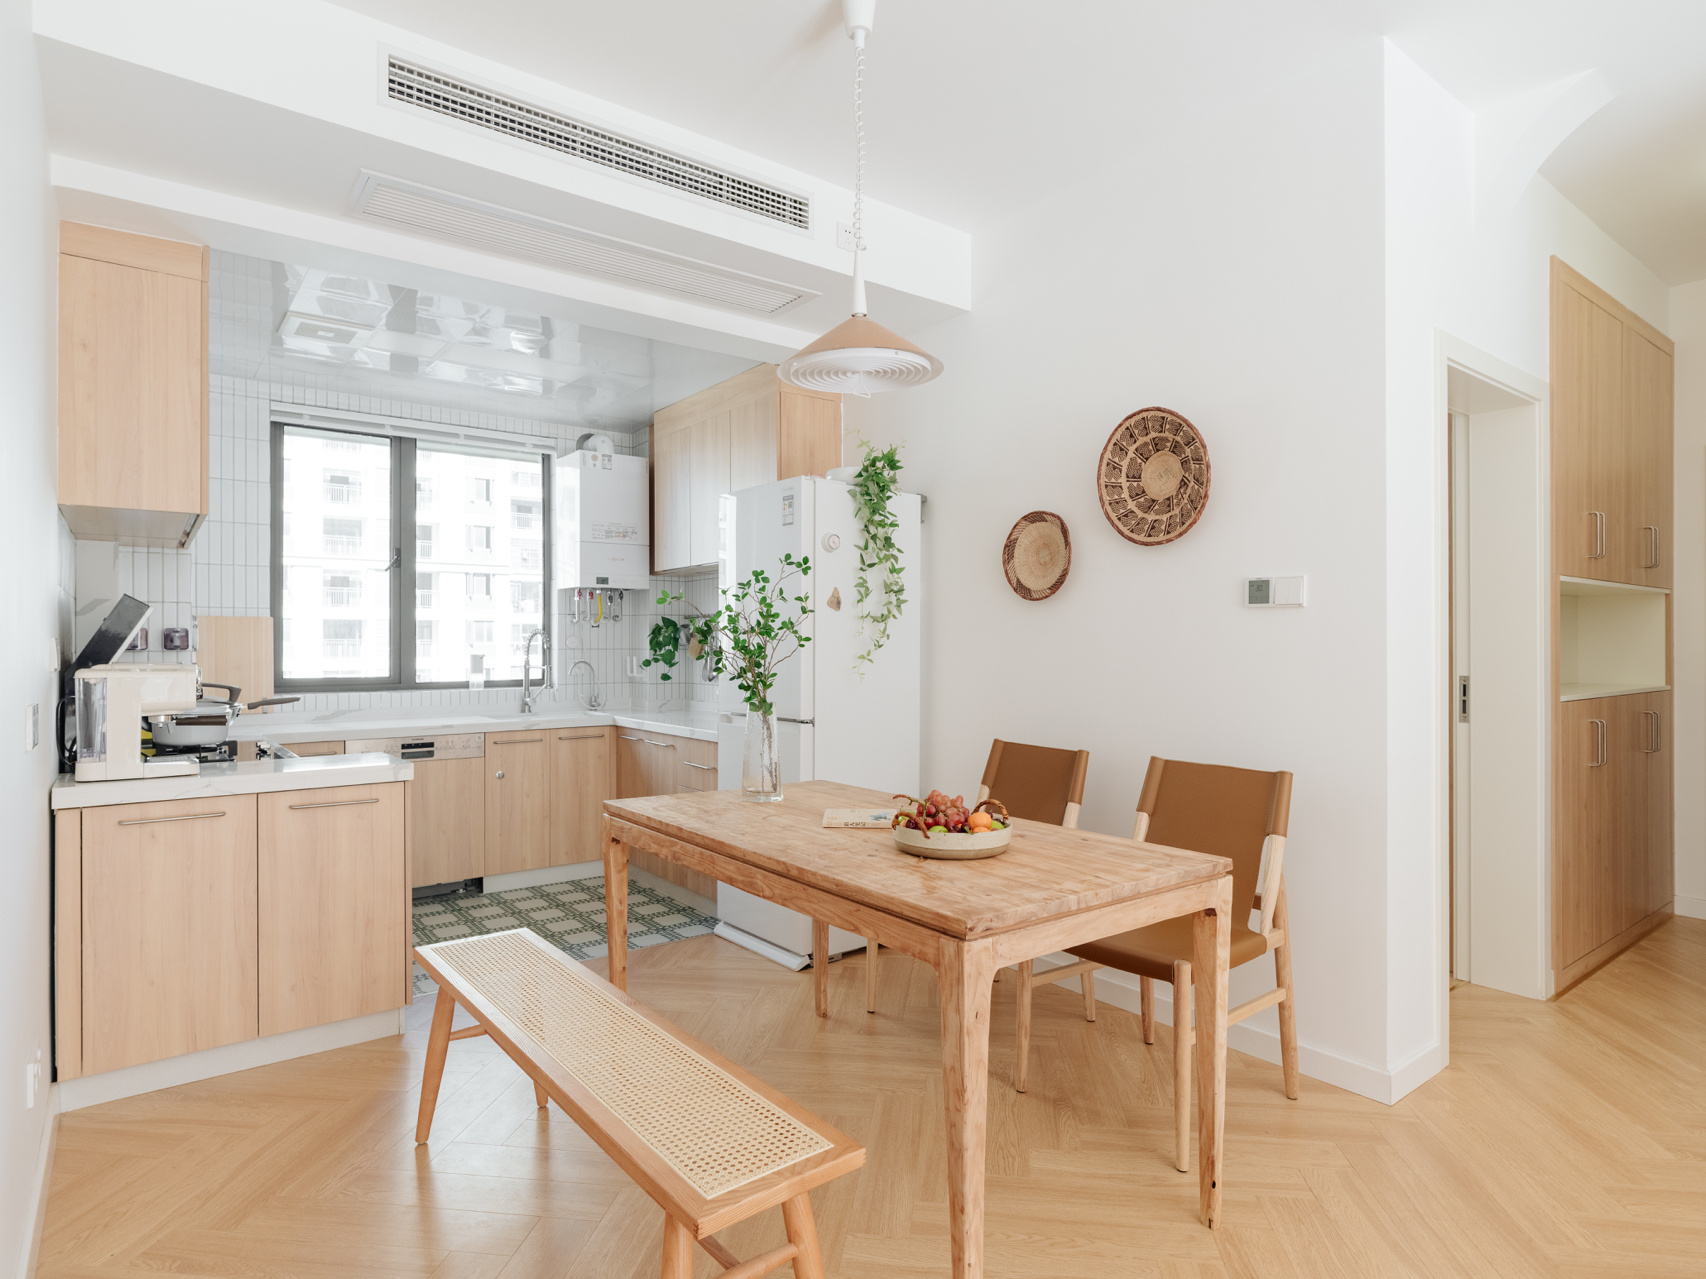 Thích mê căn hộ nhỏ phong cách nội thất Nhật Bản, tuy đơn giản nhưng lại ấm áp vô cùng - Ảnh 7.